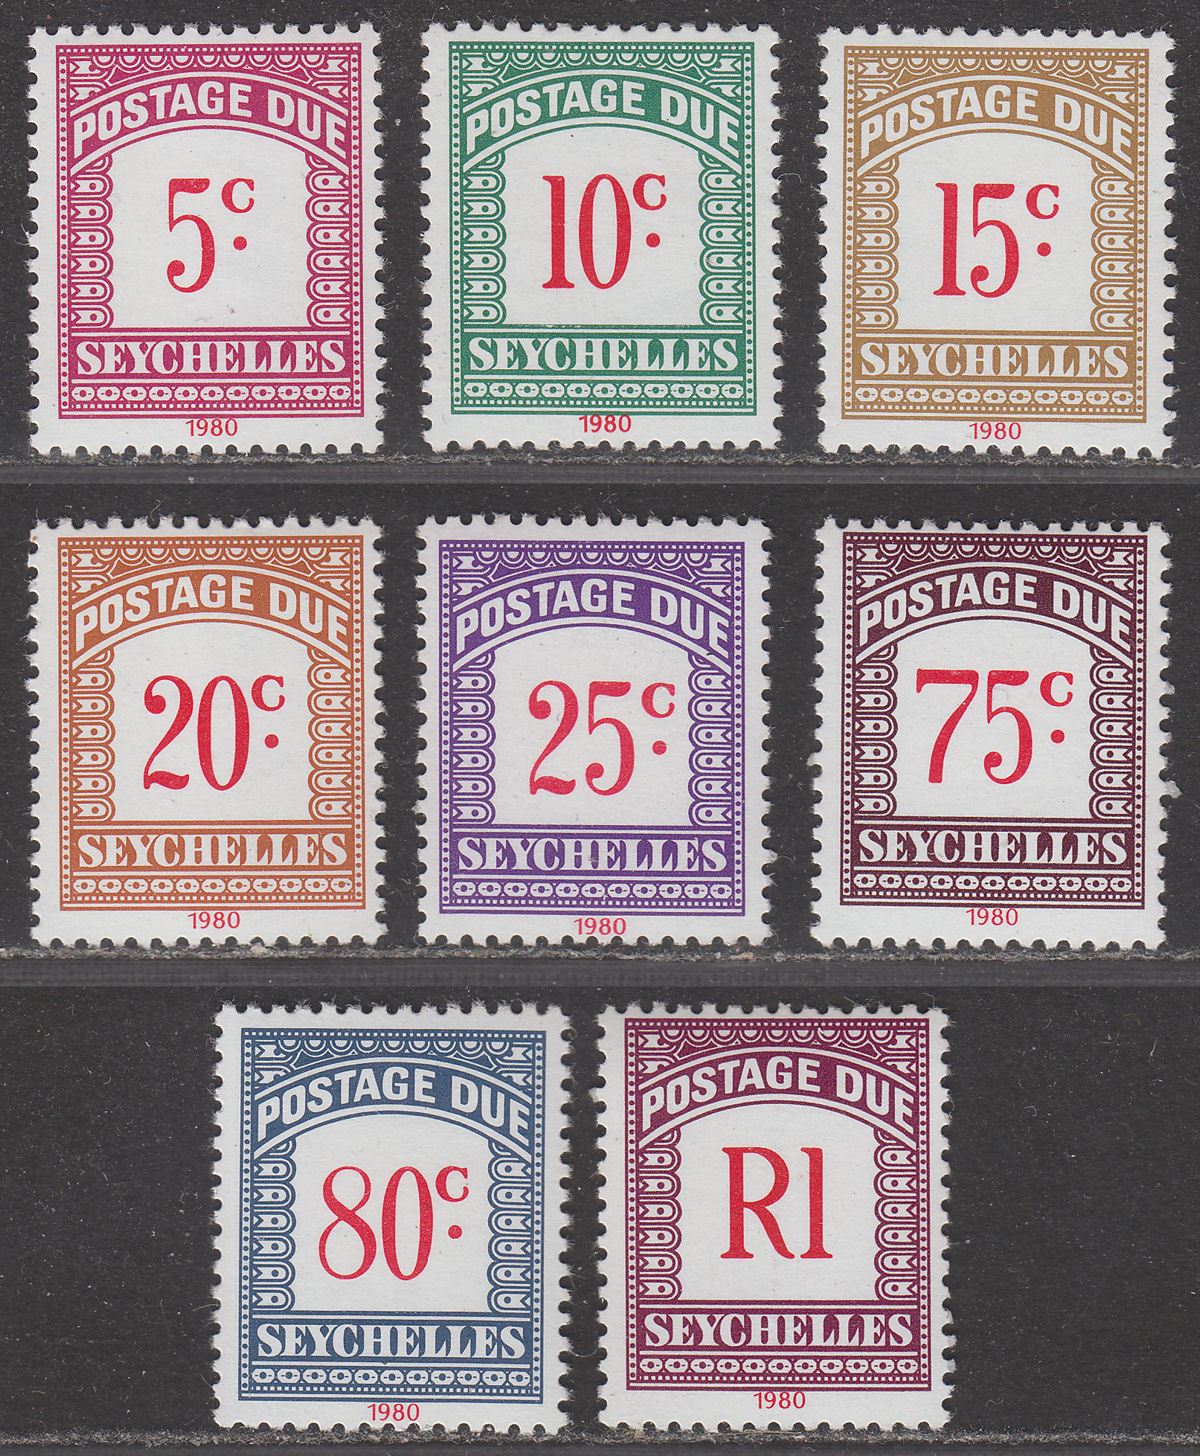 Seychelles 1980 Postage Due Set Mint SG D11-D18